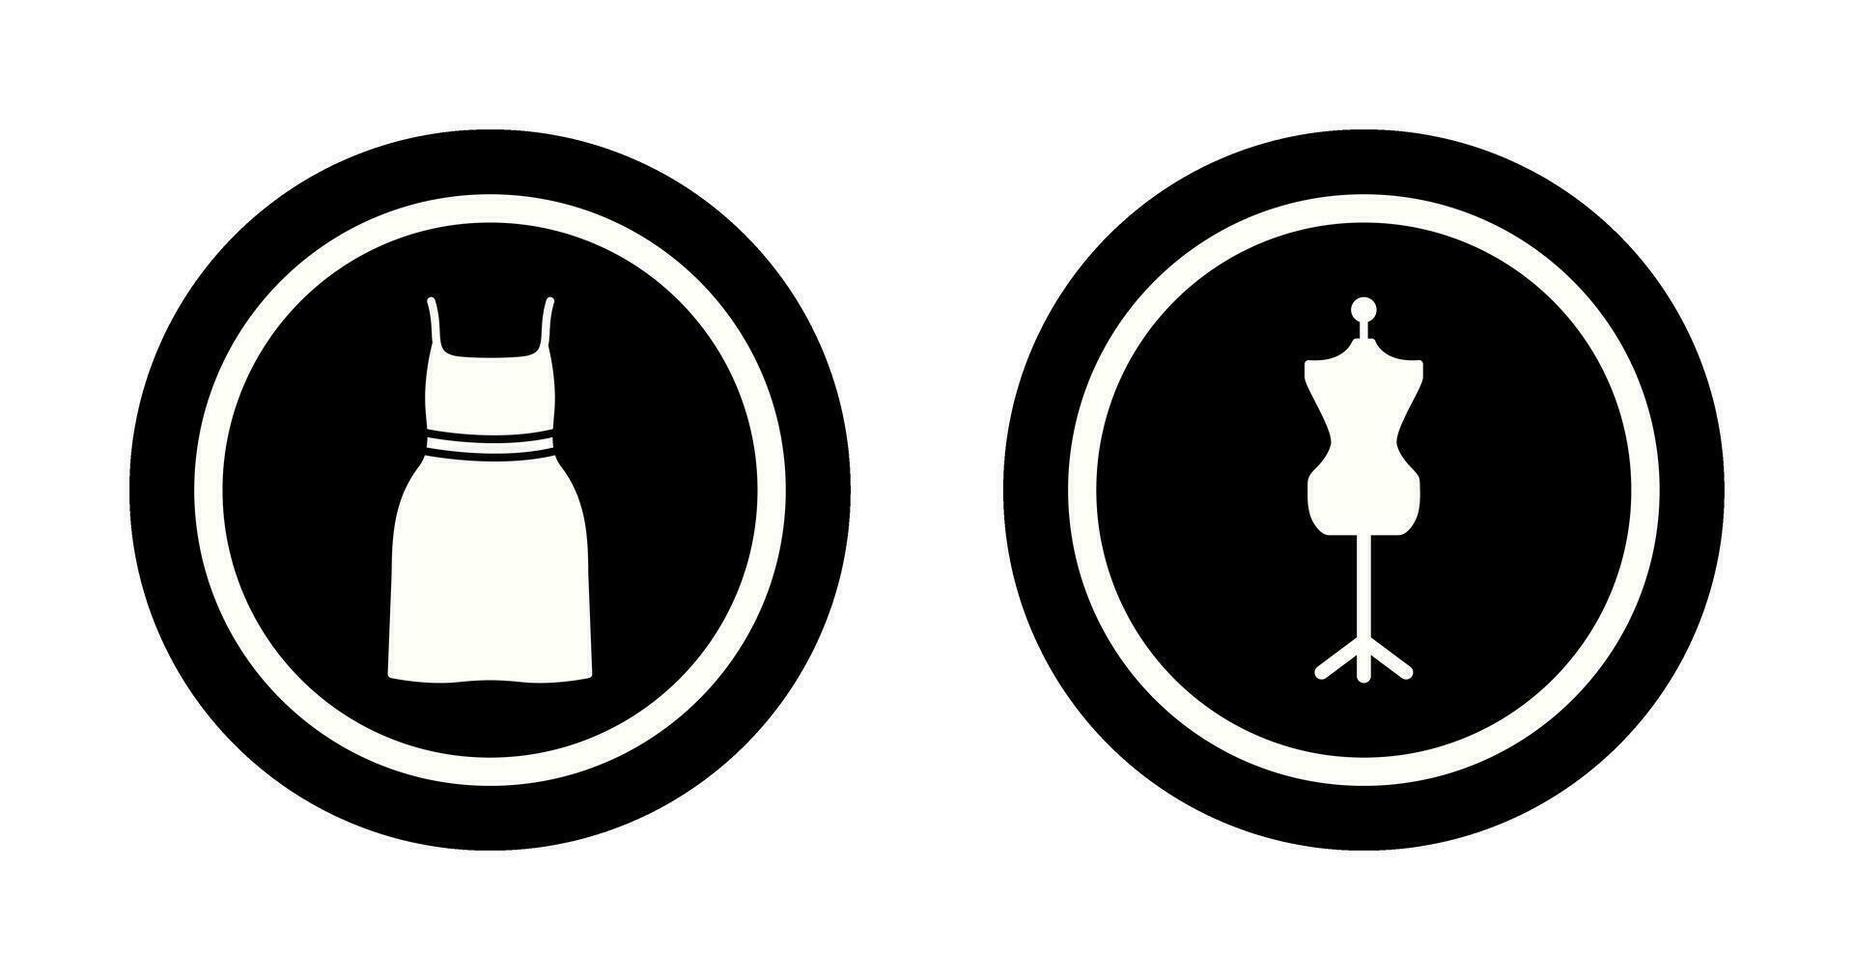 Cocktail Kleid und Kleid Halter Symbol vektor